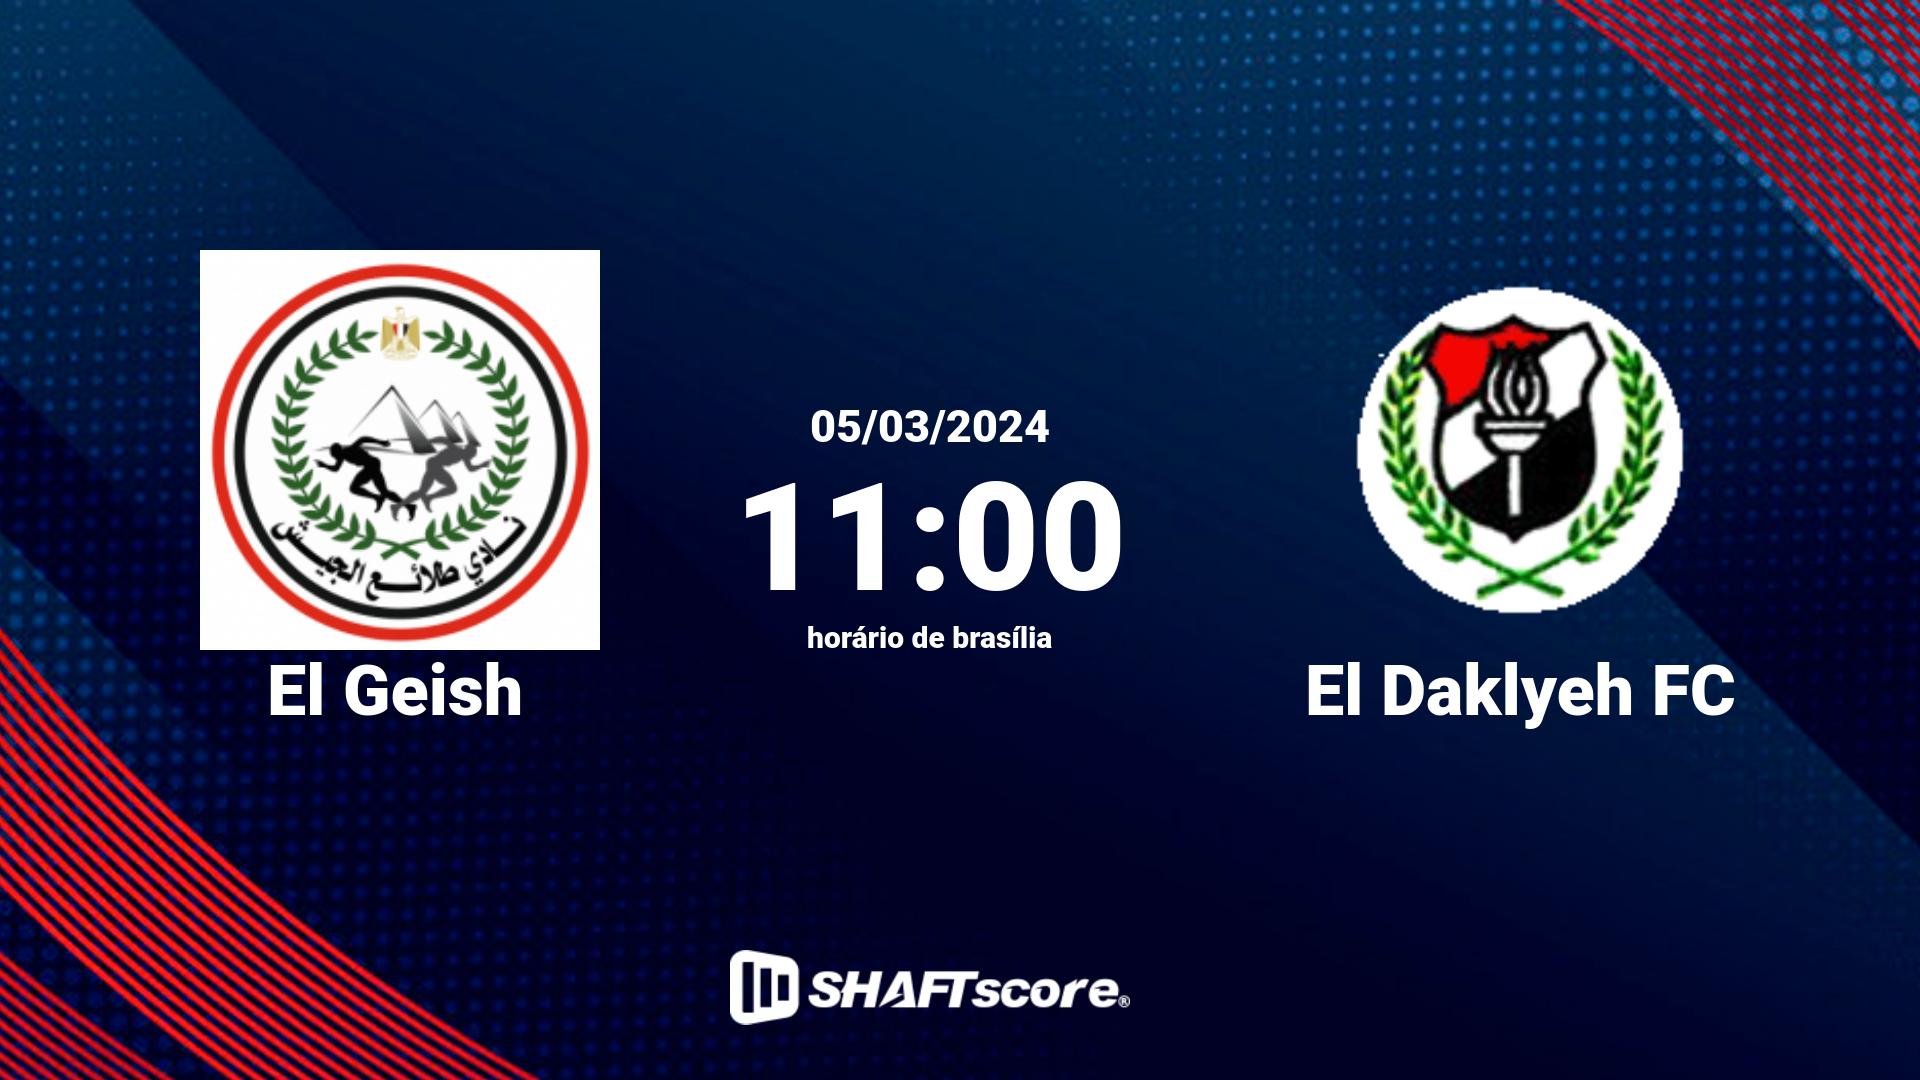 Estatísticas do jogo El Geish vs El Daklyeh FC 05.03 11:00